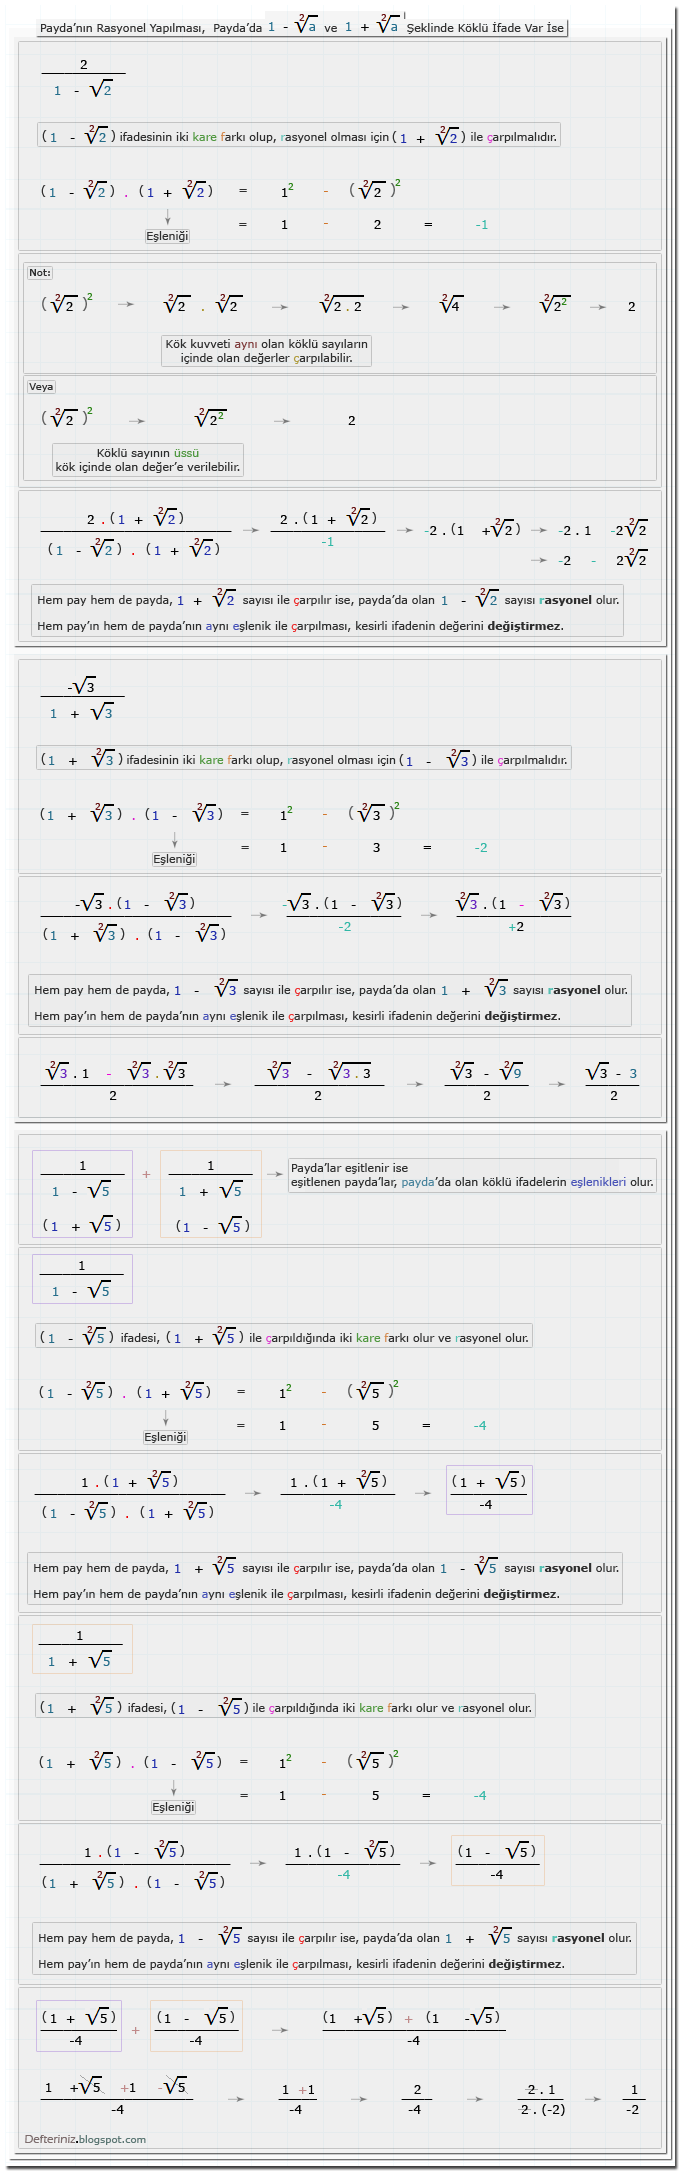 Örnek-17 » Payda'nın rasyonel yapılması » Payda'da 1 - √a ve 1 + √a şeklinde köklü ifade var ise » Eşleniği ile iki kare farkına dönüştürülen payda'lar.